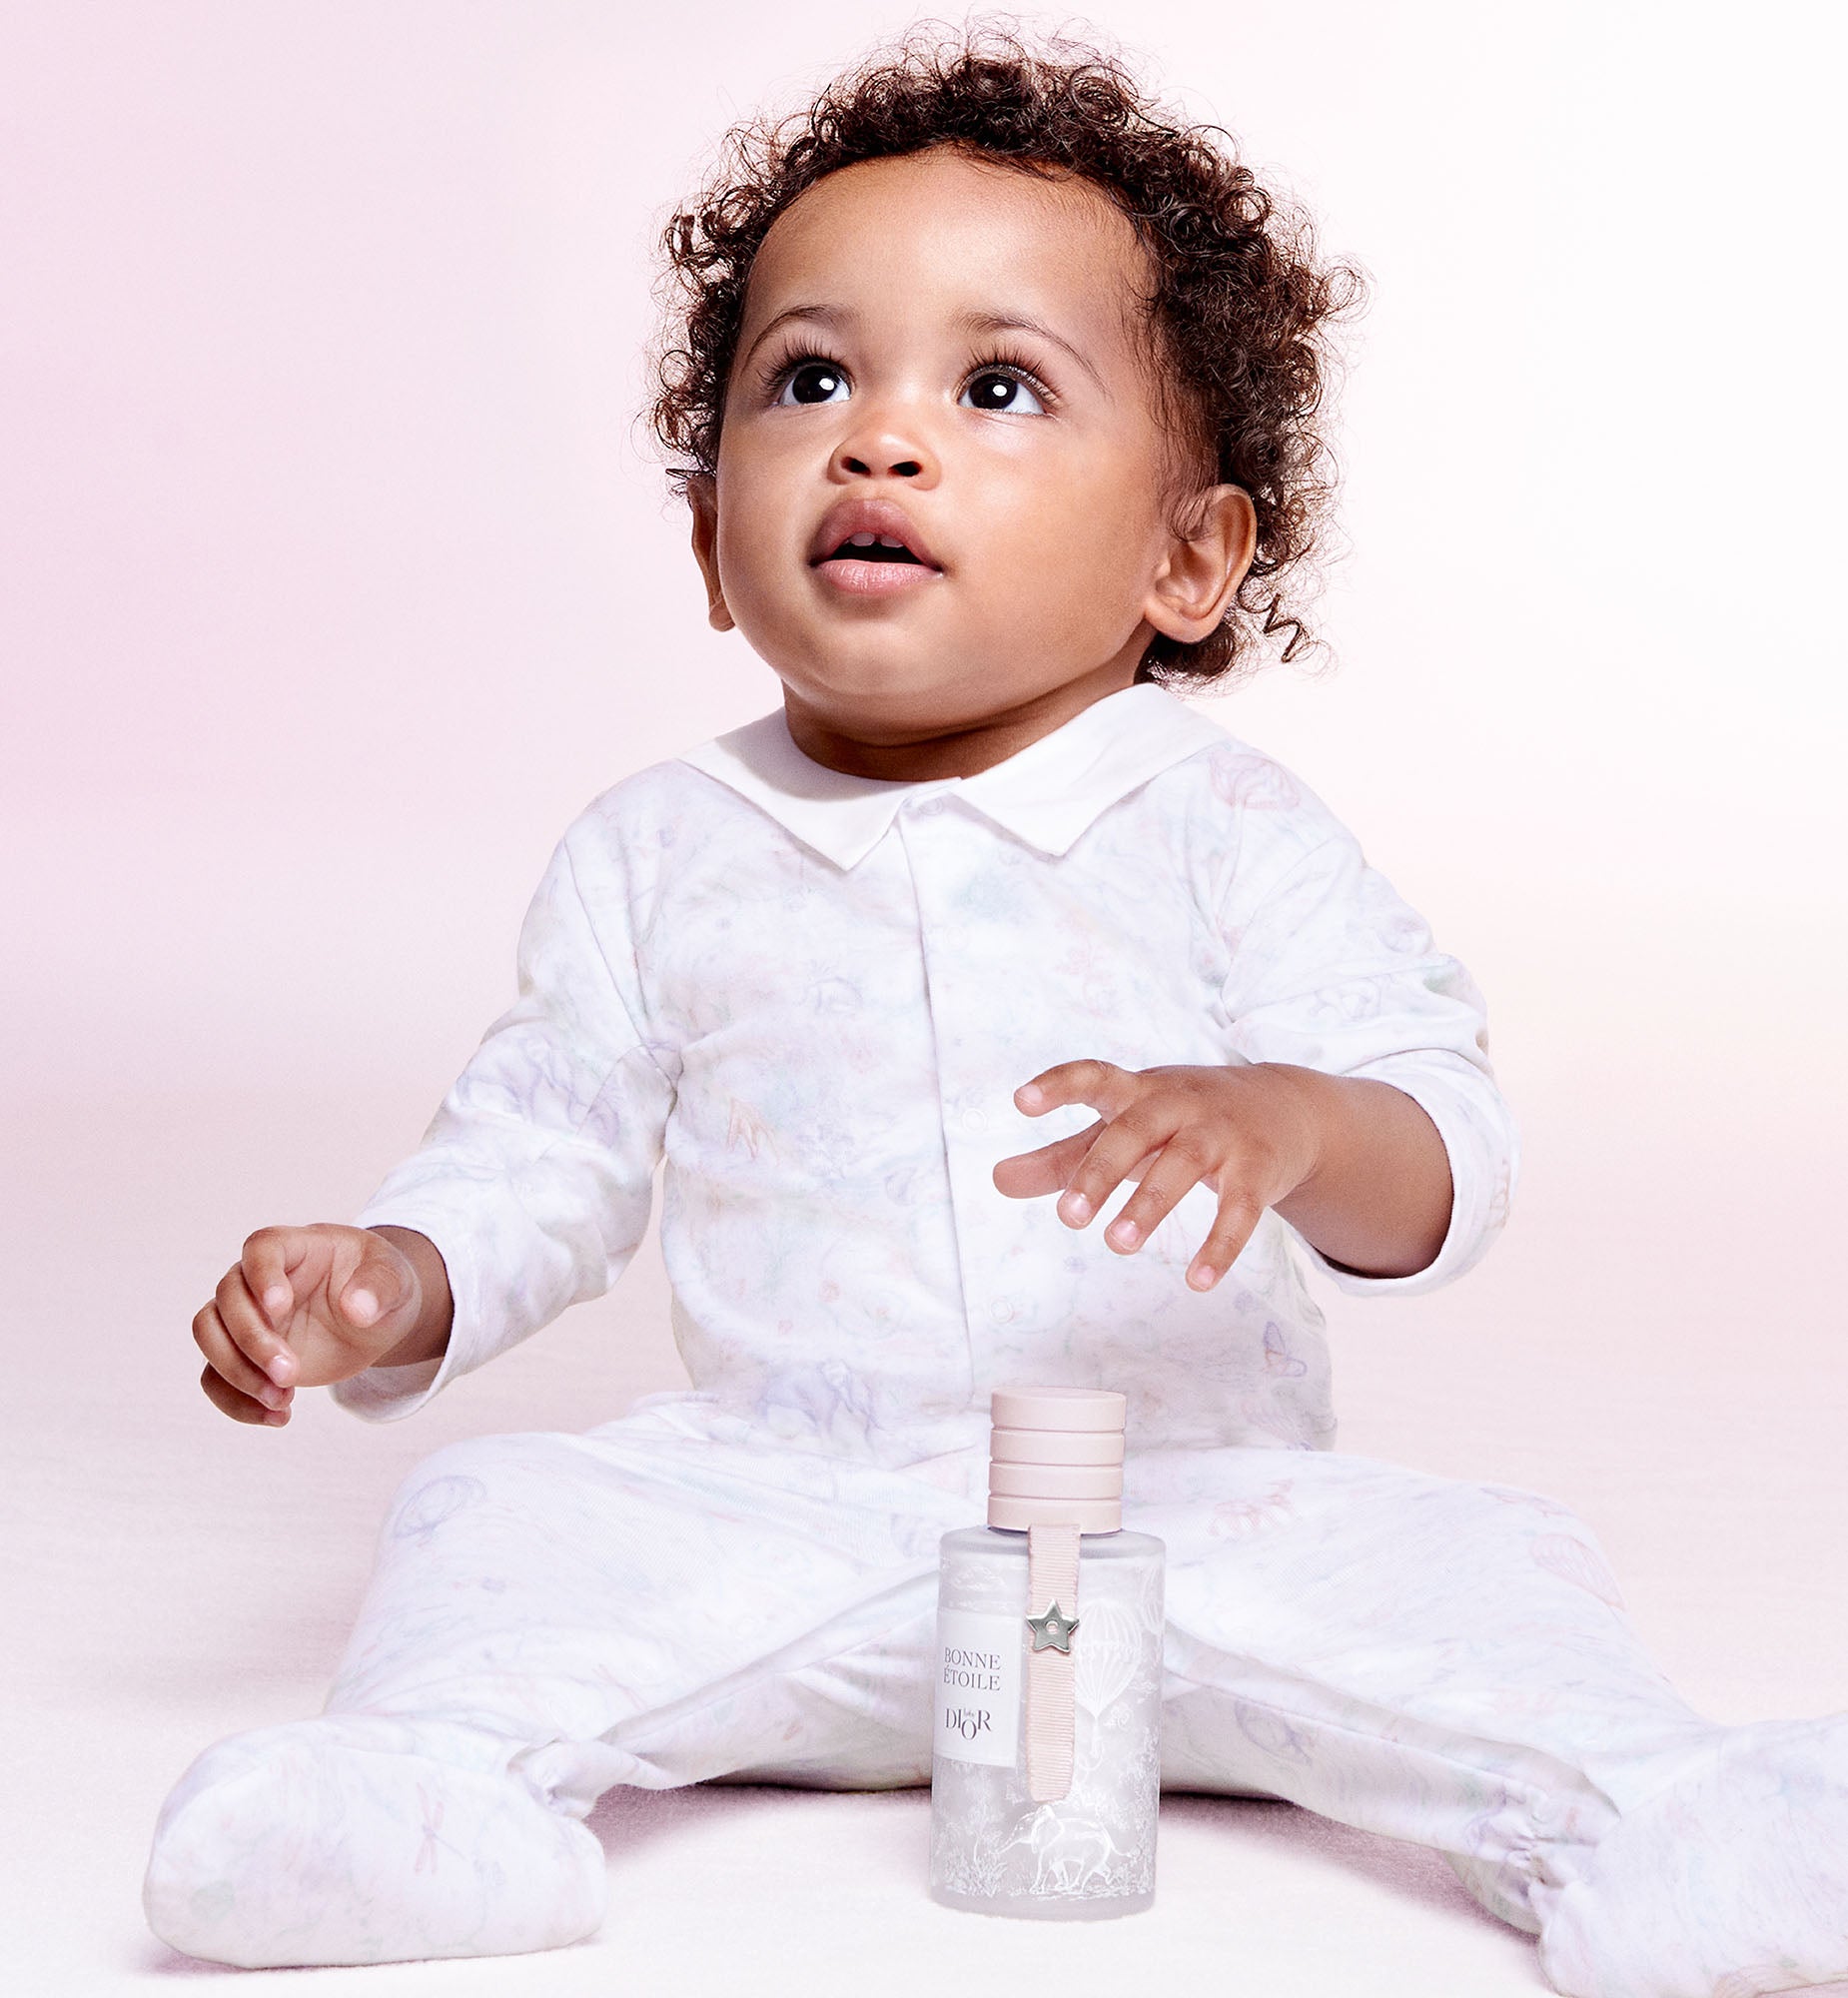 Baby Dior La Mousse Très Fondante: Cleansing Foam for Children